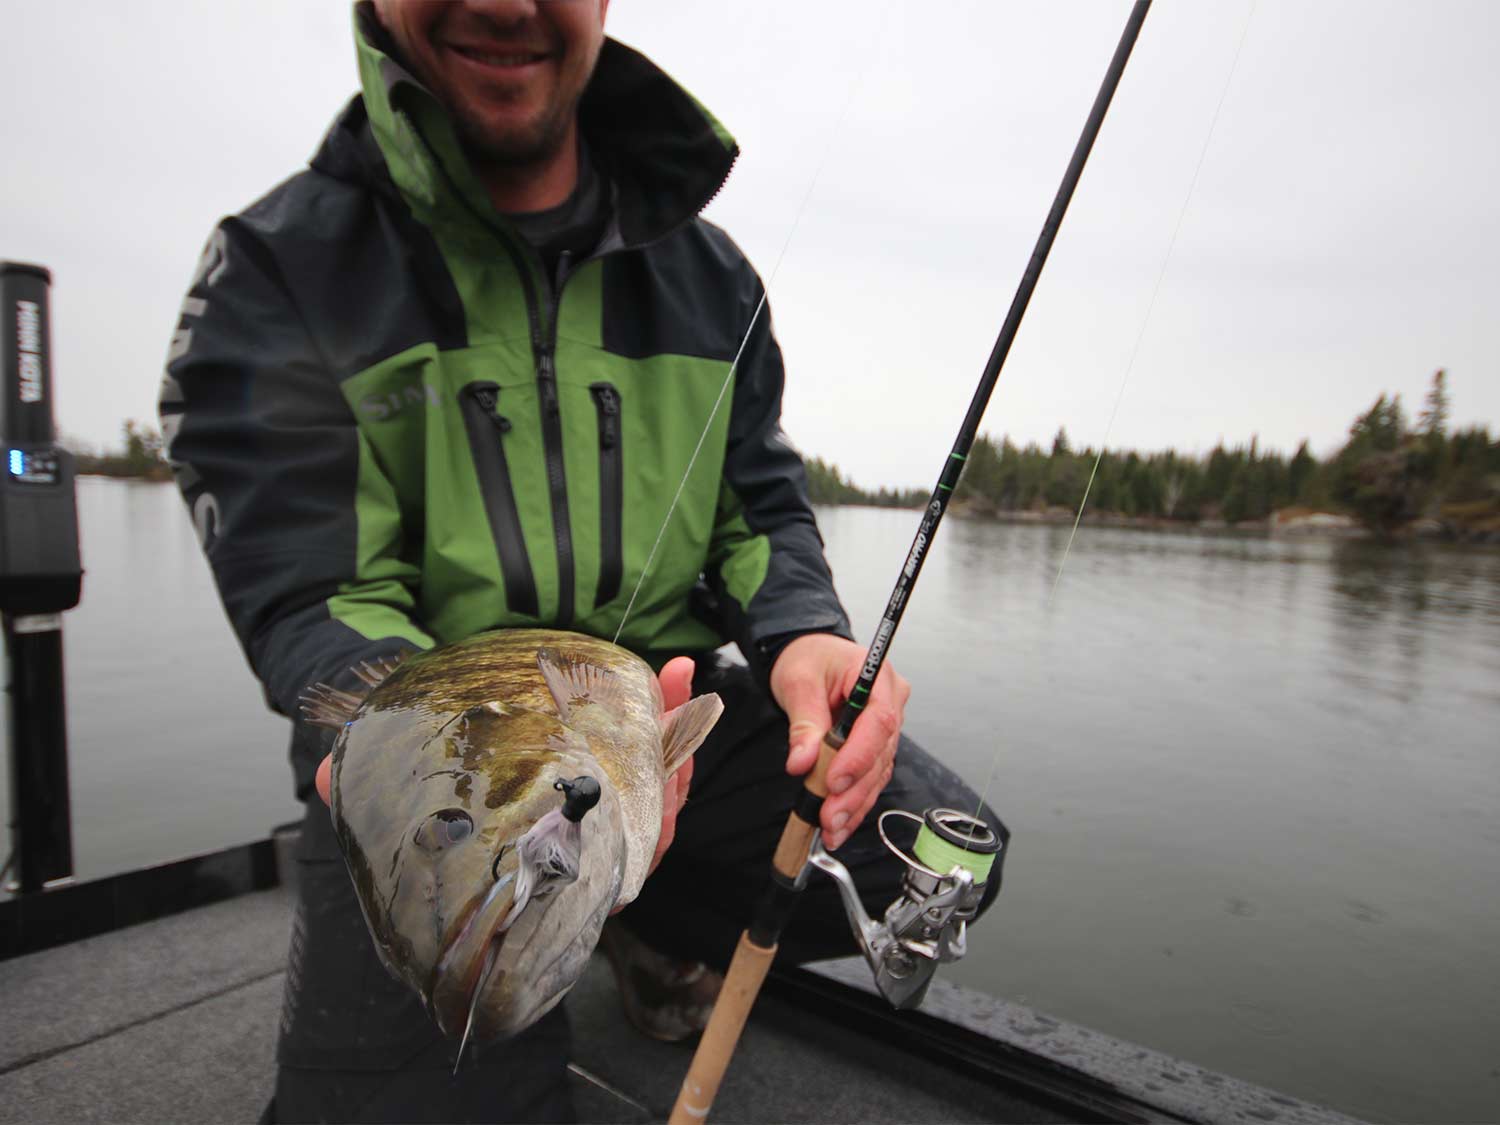 An angler holds up a bass.